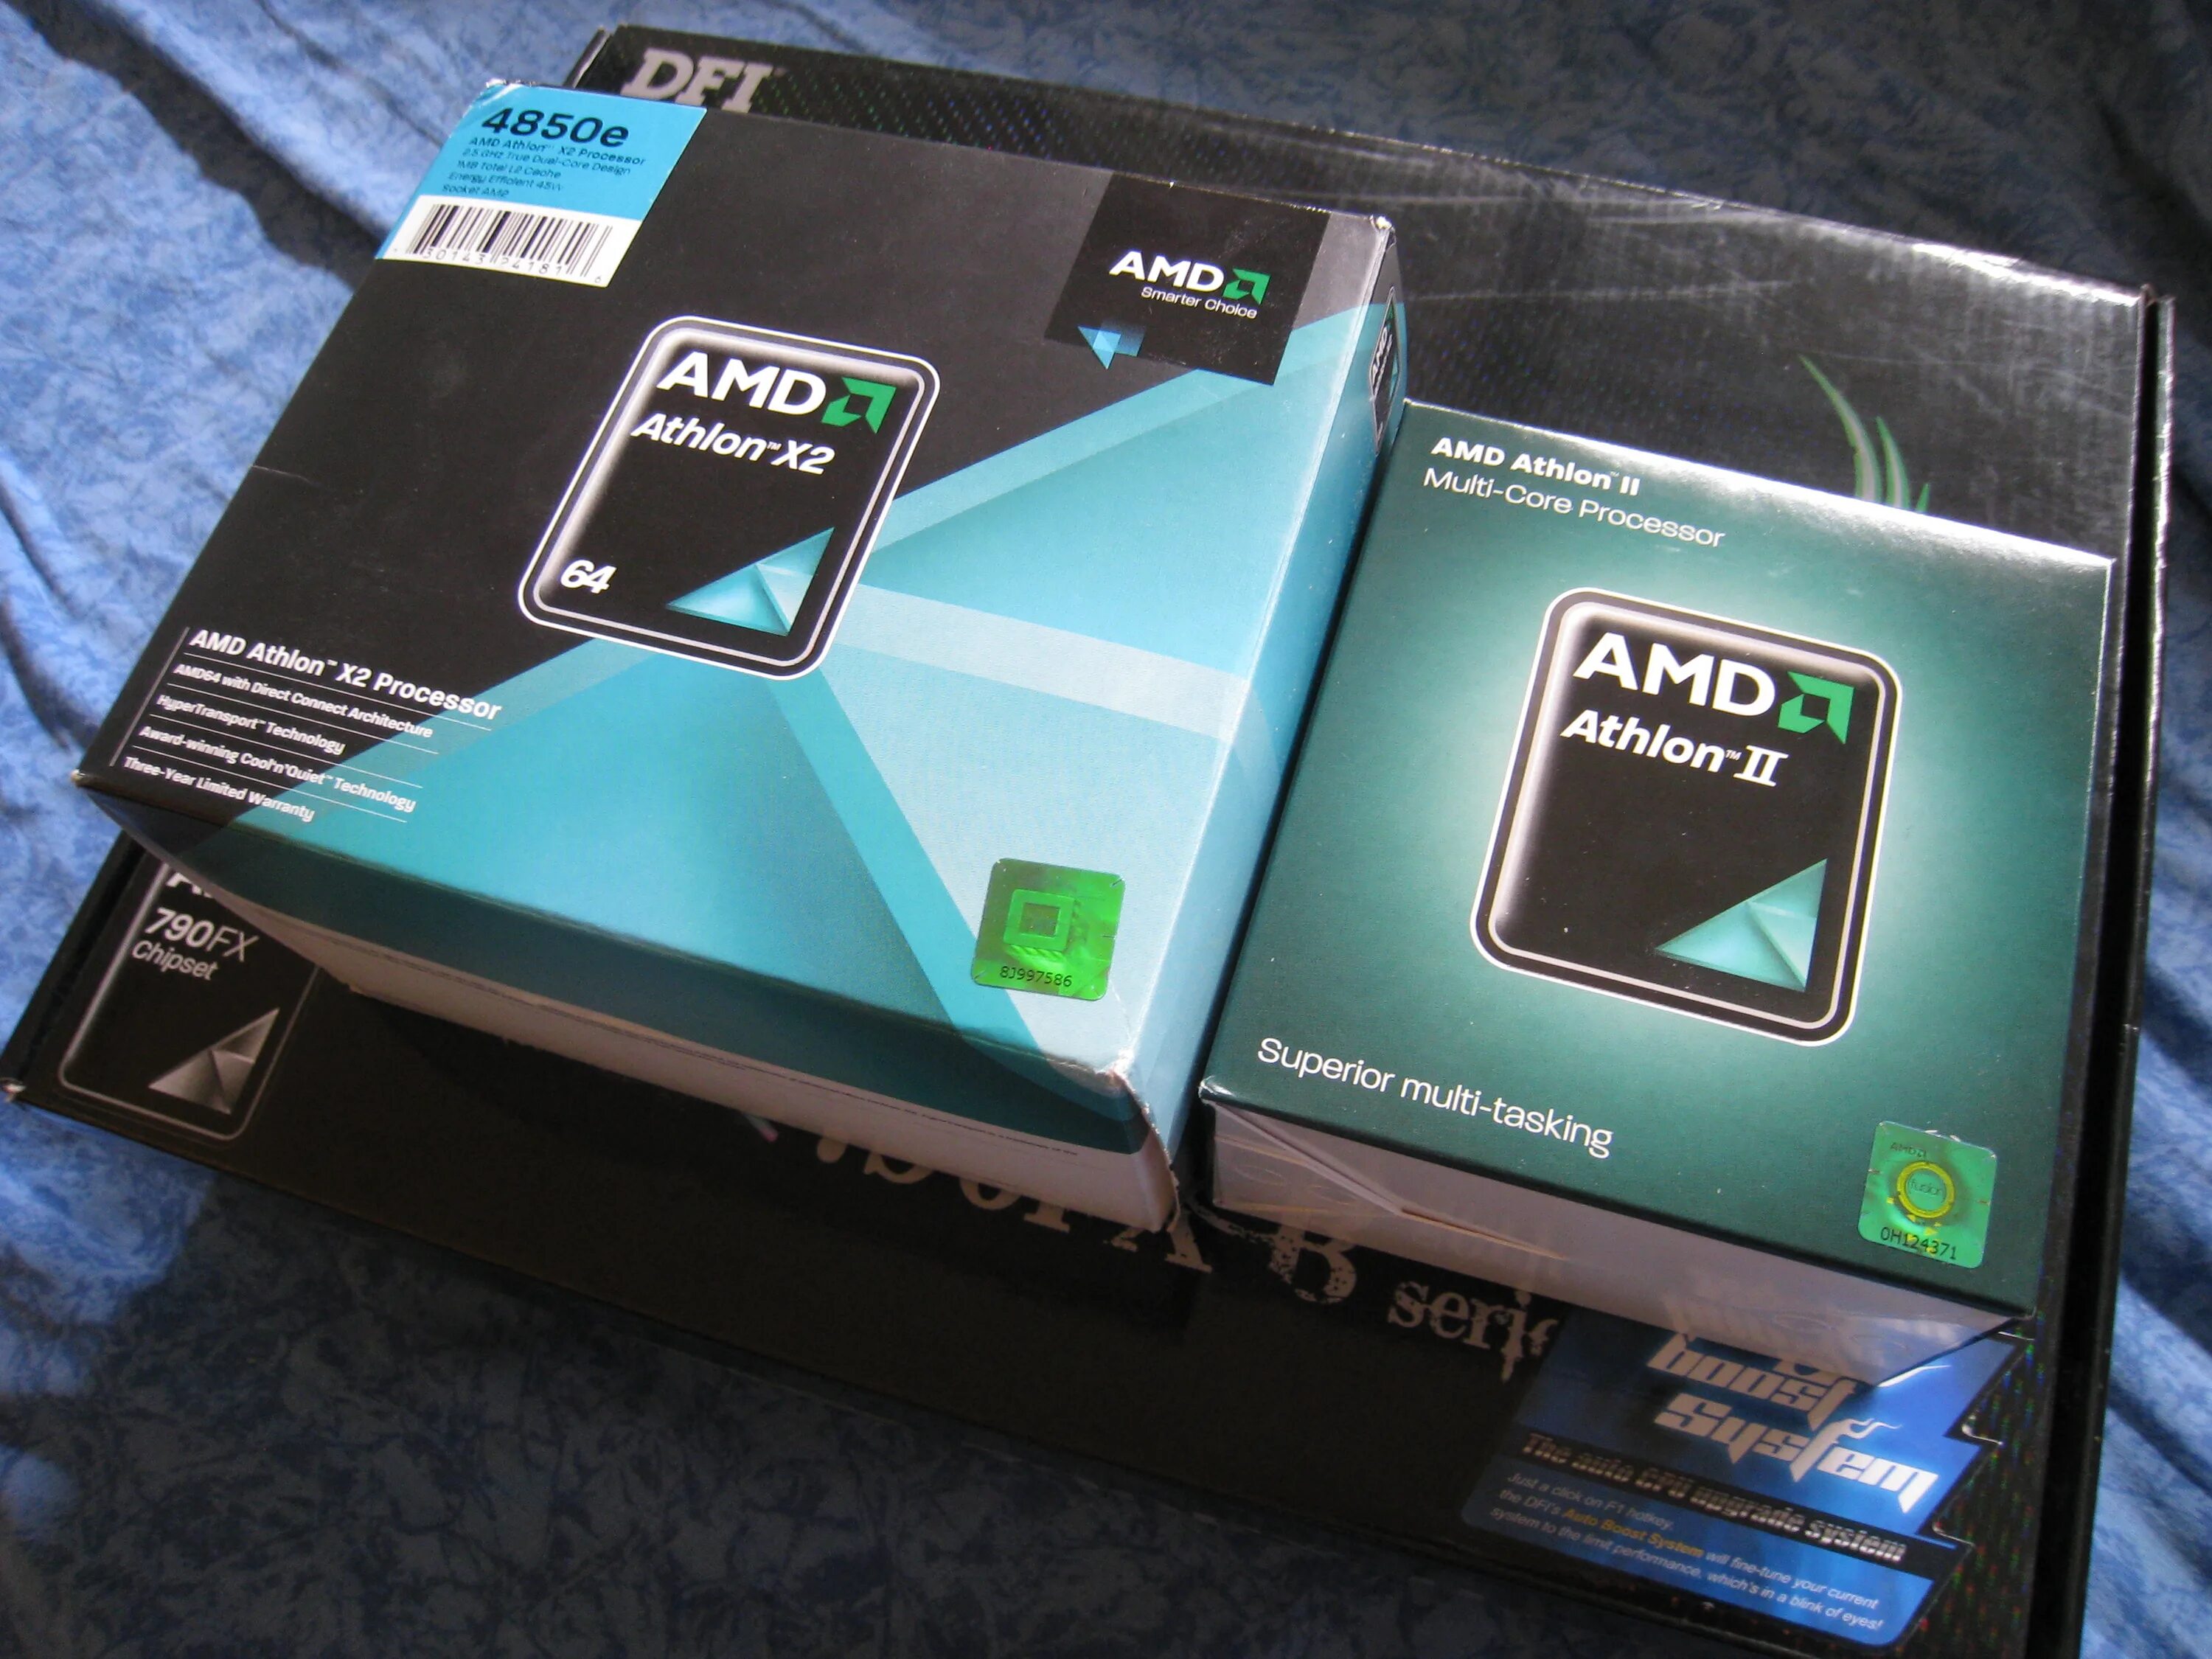 Amd 2 series. AMD Athlon 64 x2. АМД Athlon 64 x 2. AMD Athlon II x64 2. AMD Athlon 64 x2 Box.